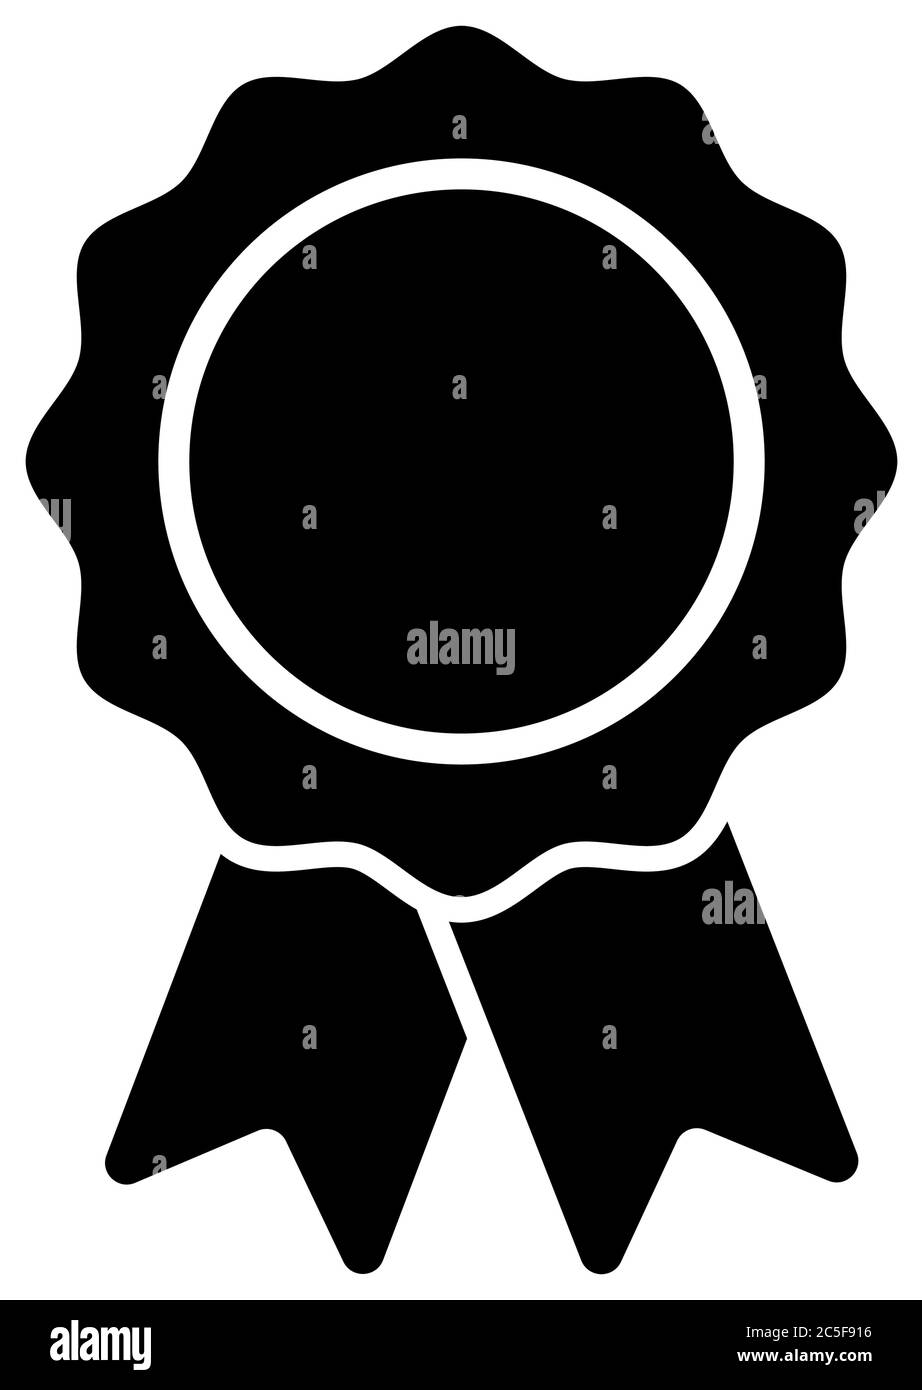 Simbolo di riconoscimento dell'icona del badge a nastro nero, immagine vettoriale Illustrazione Vettoriale